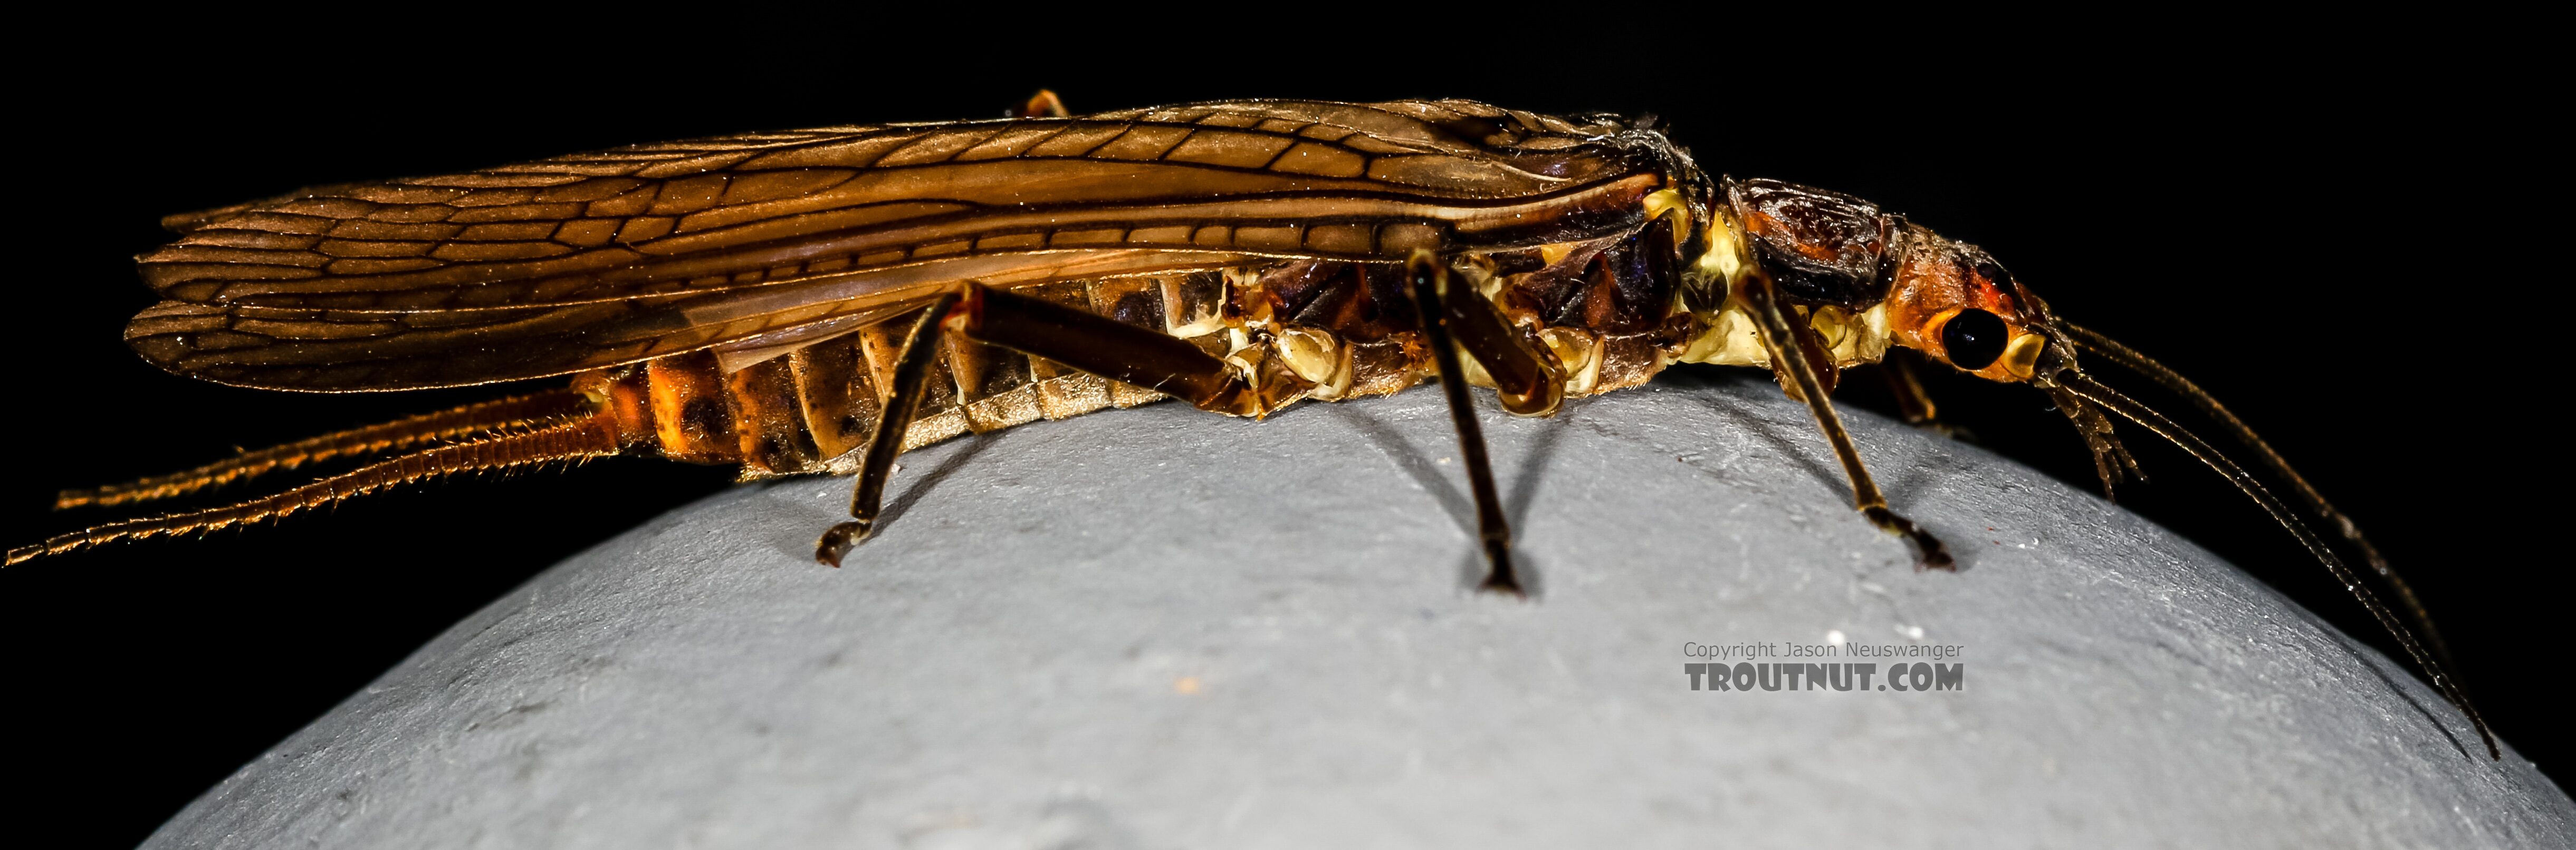 Female Hesperoperla pacifica (Golden Stone) Stonefly Adult from the Henry's Fork of the Snake River in Idaho